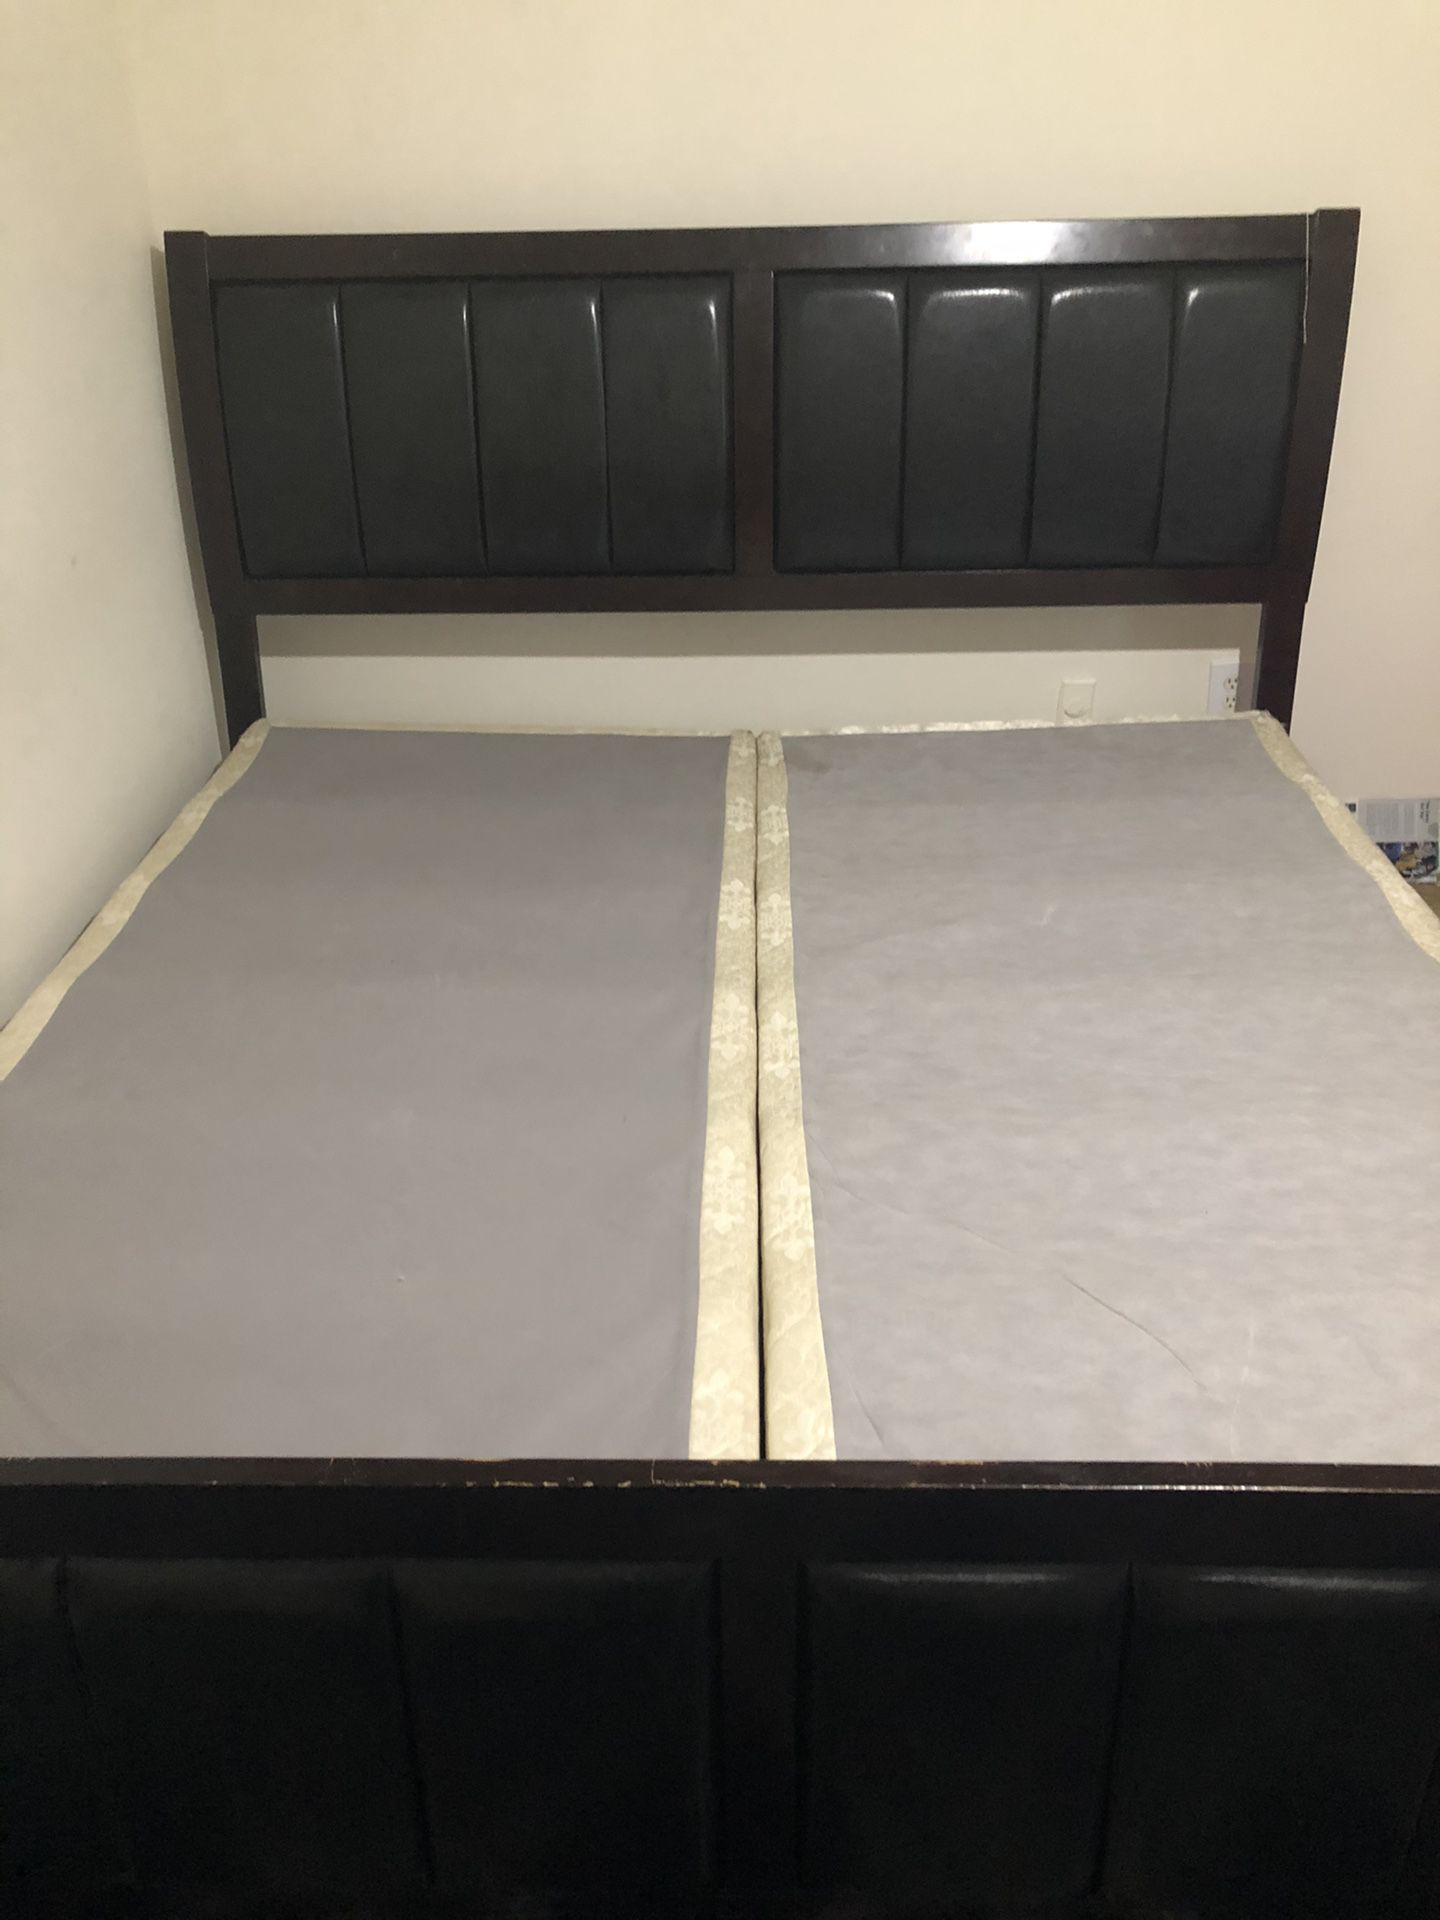 King size Bed Frame